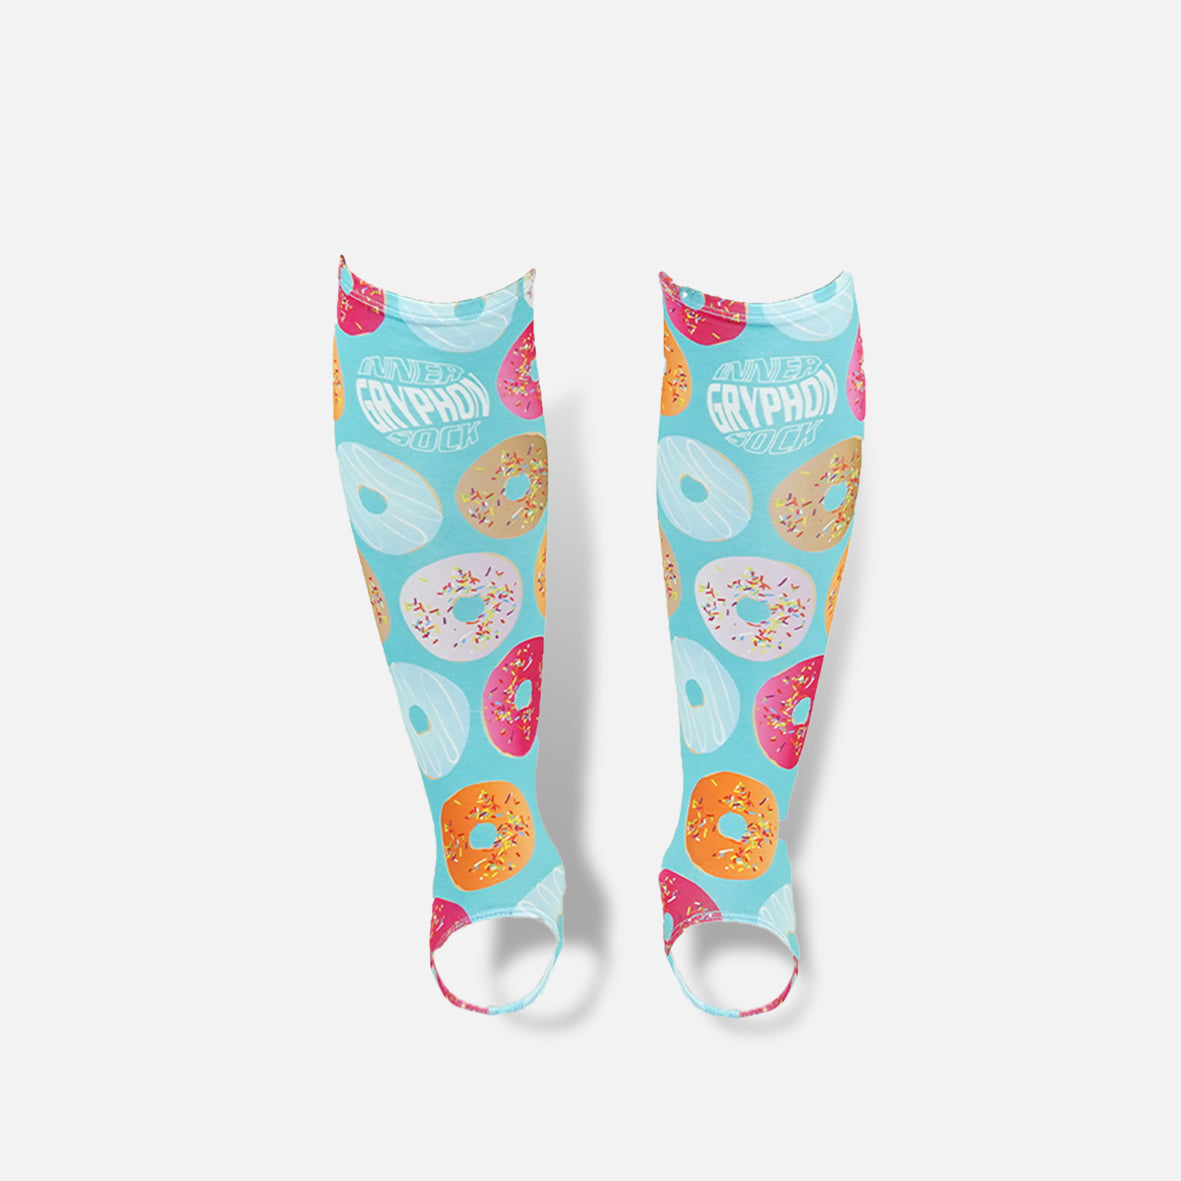 Gryphon Inner Socks